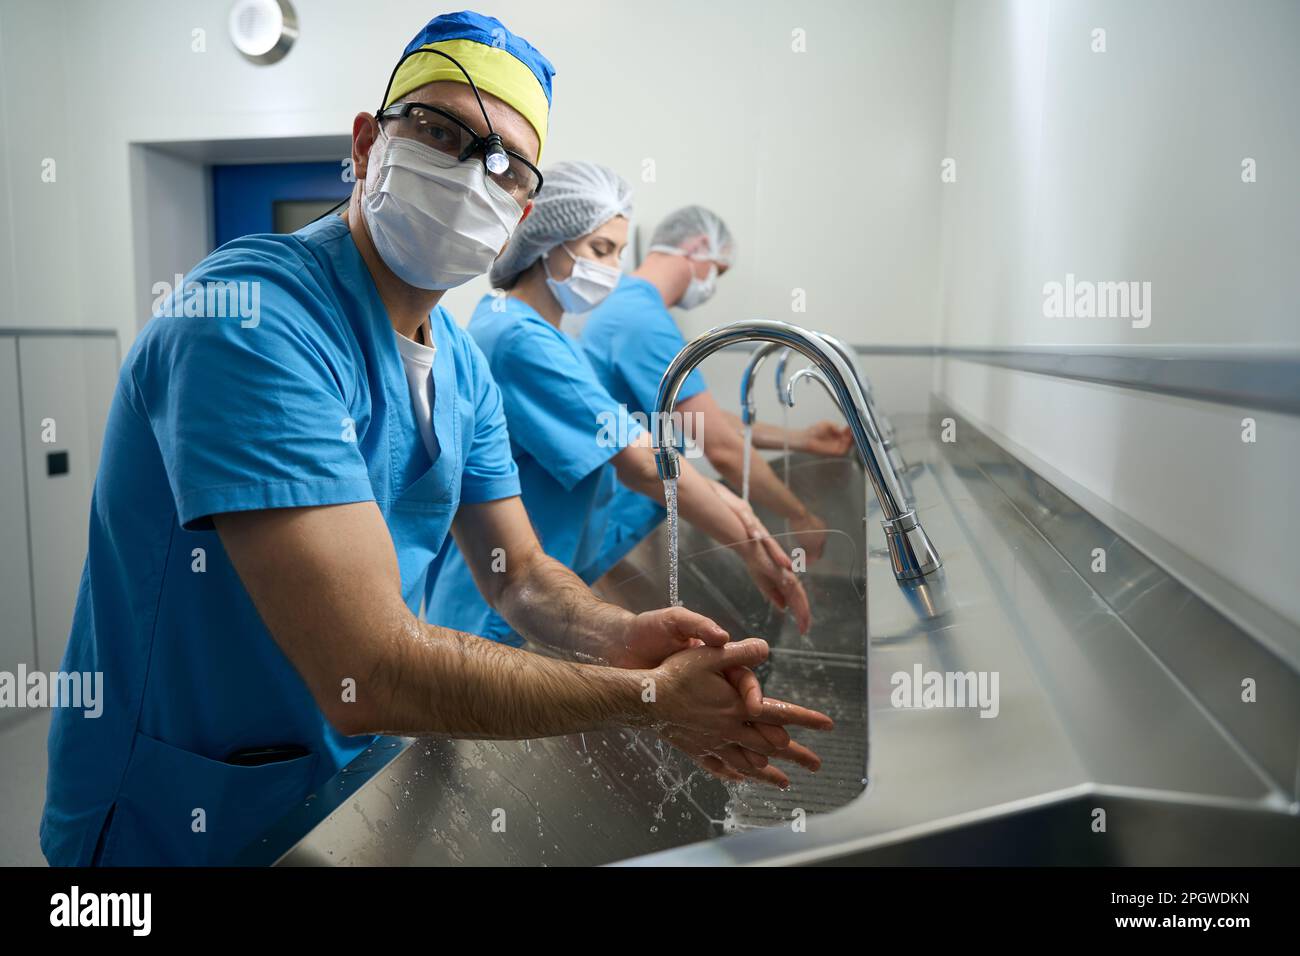 Le persone in camici medici si lavano le mani prima dell'intervento Foto Stock